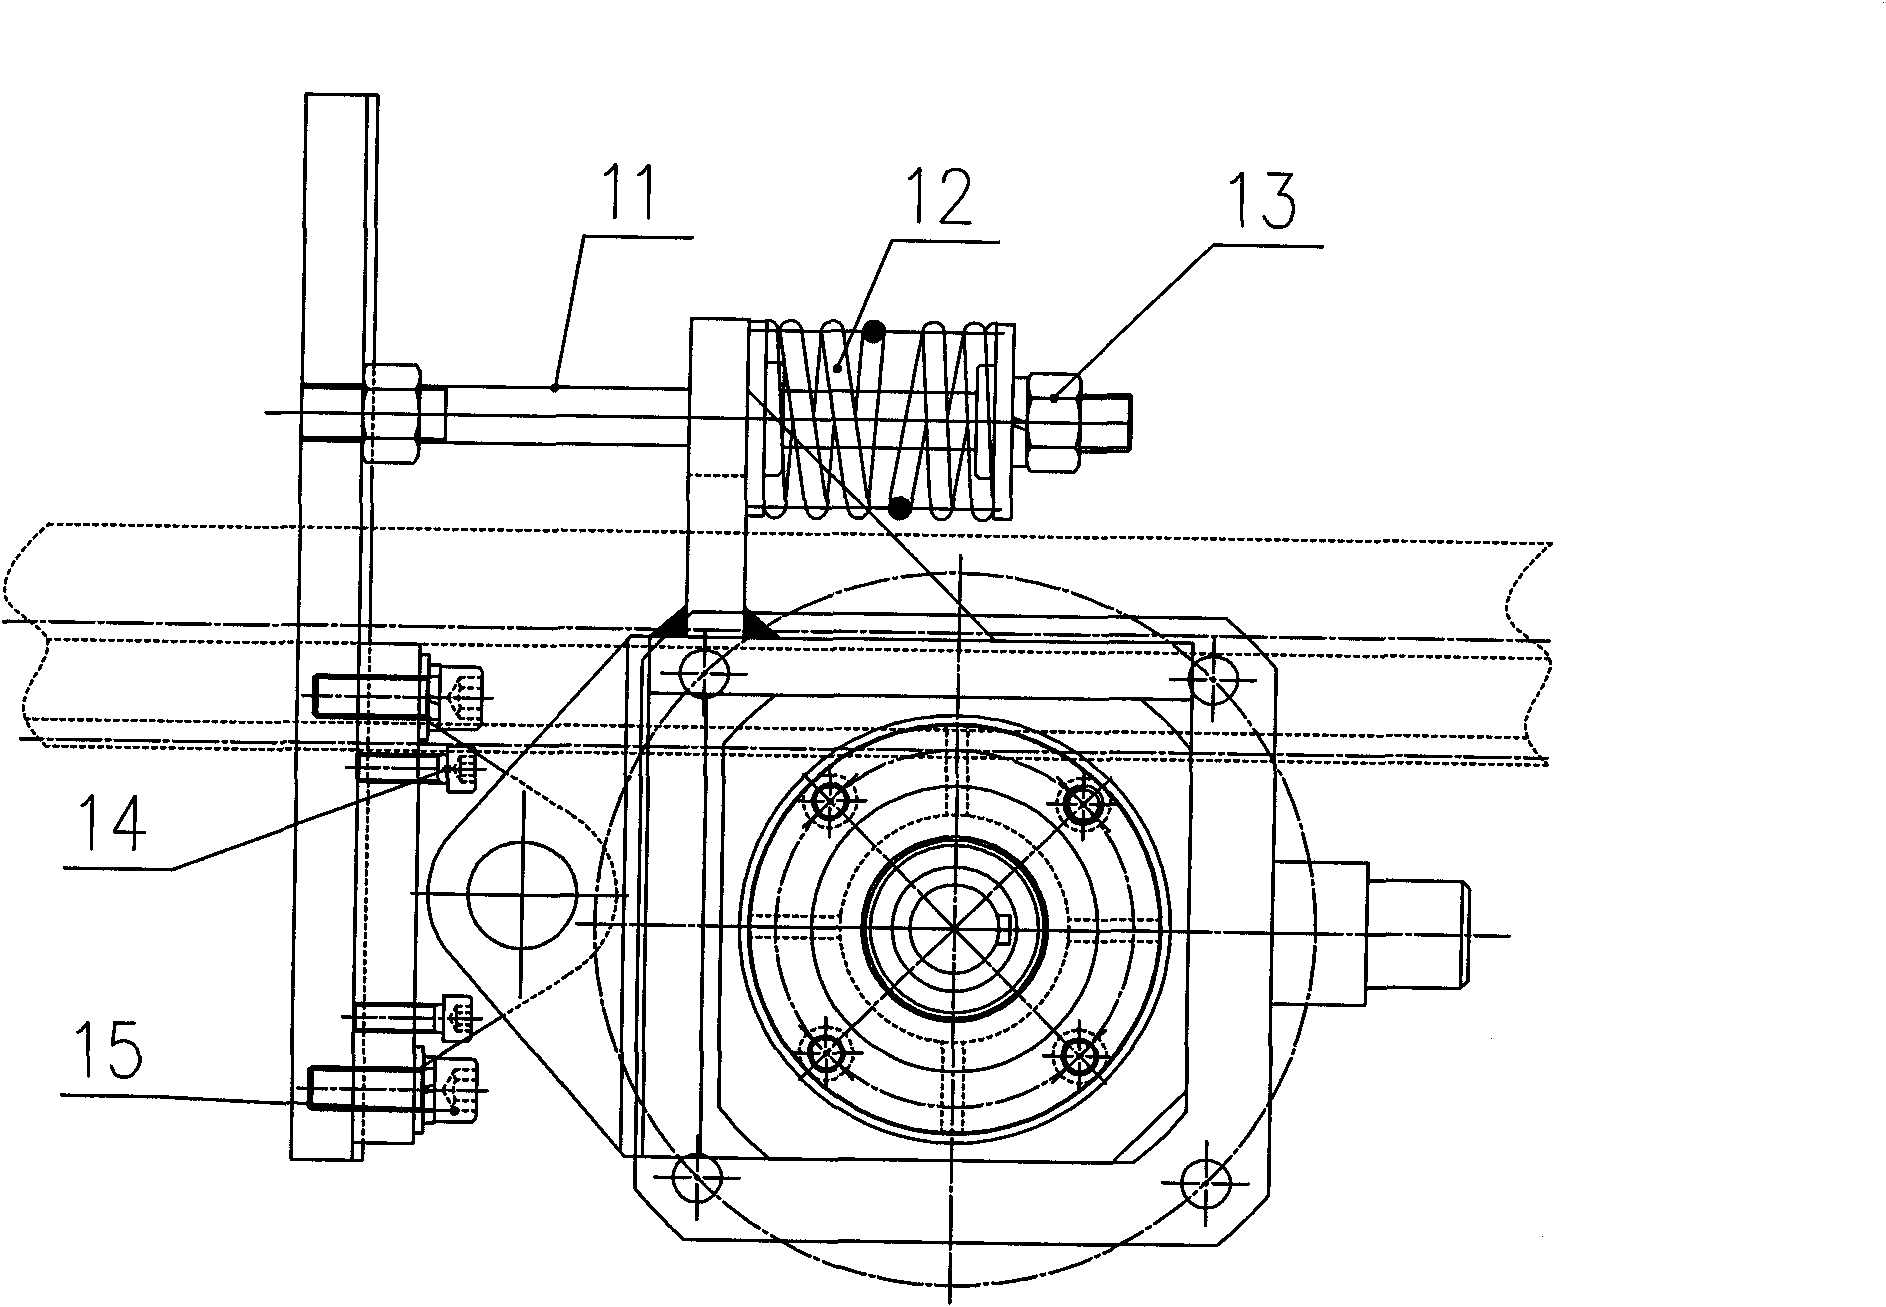 Transmission gap adjusting mechanism of gantry numerical control cutting machine